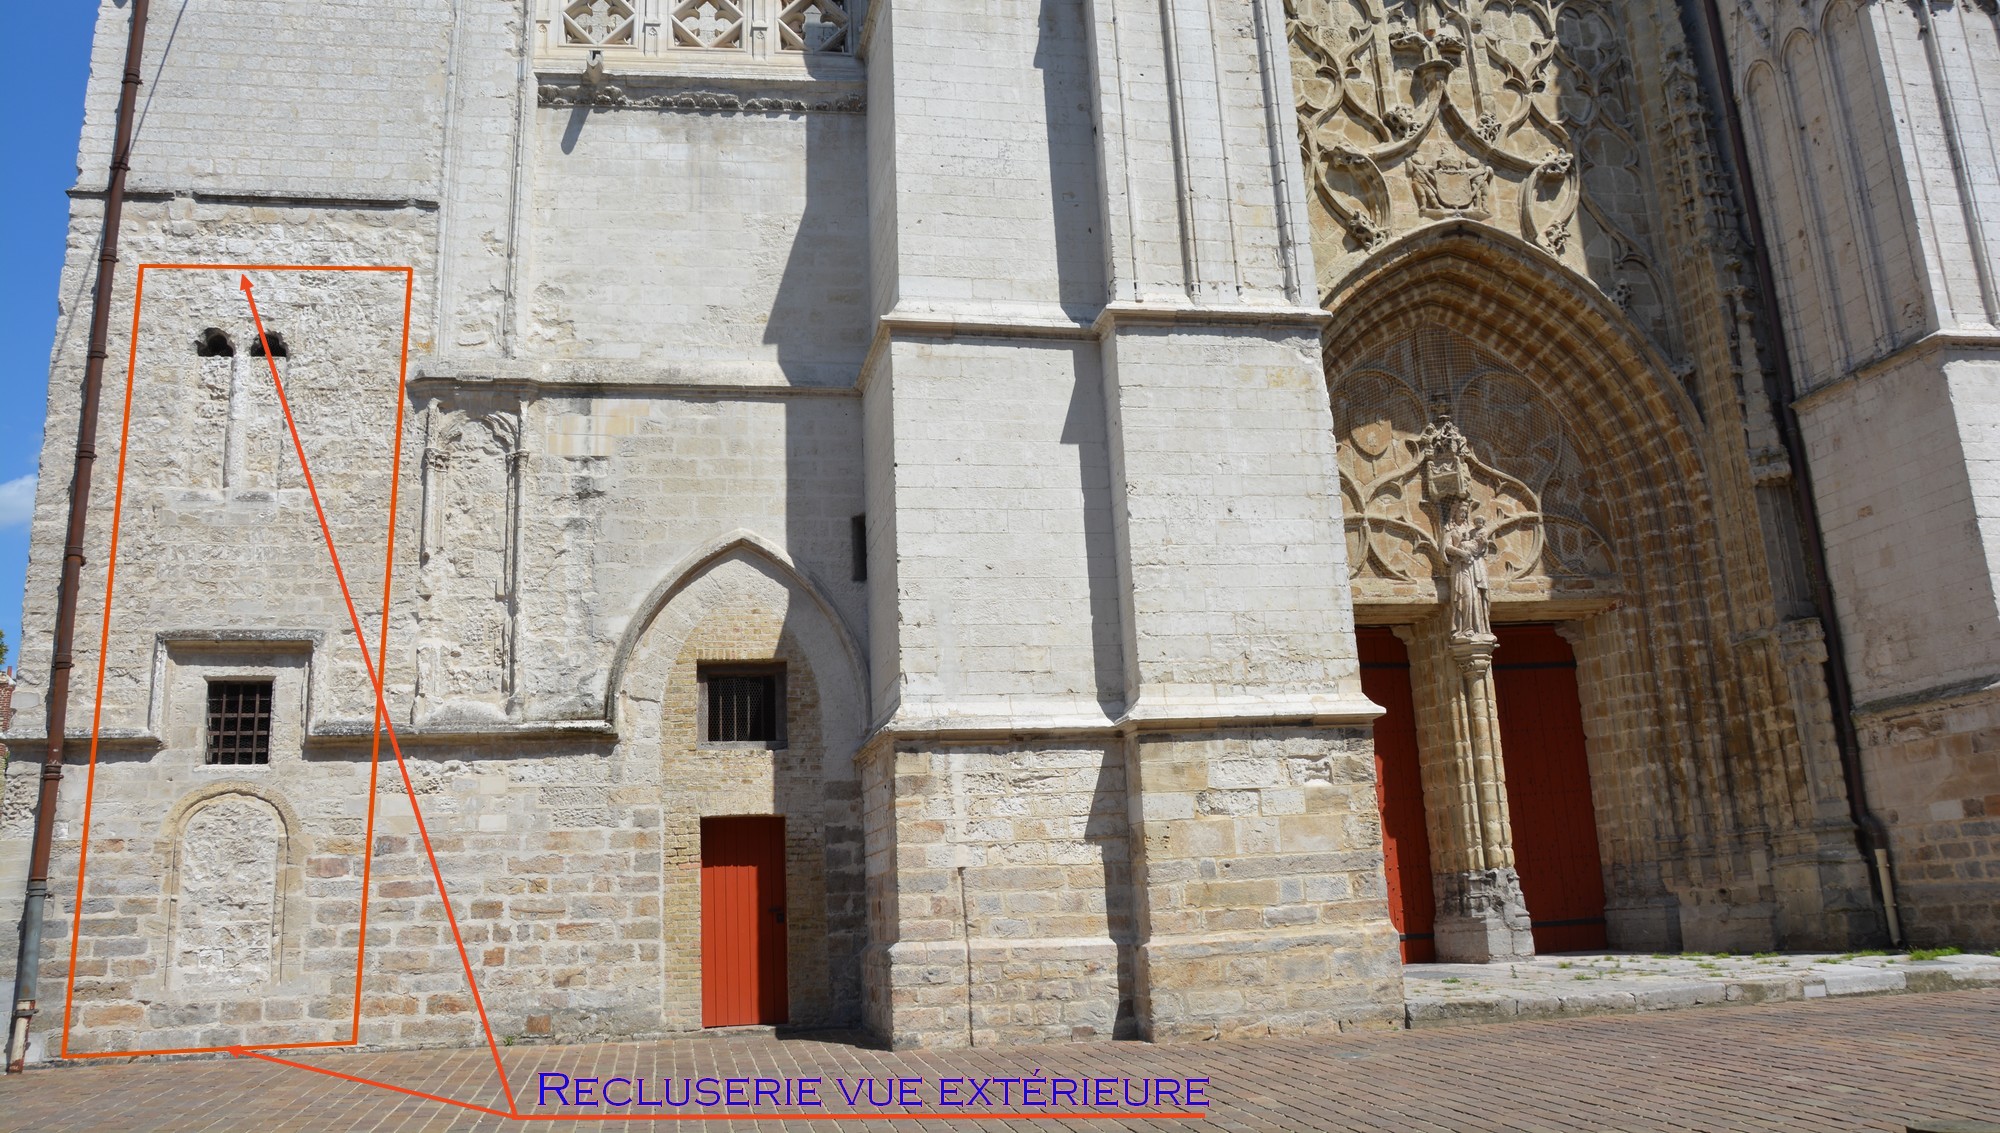 Cathédrale de Saint-Omer - vue extérieure de la recluserie